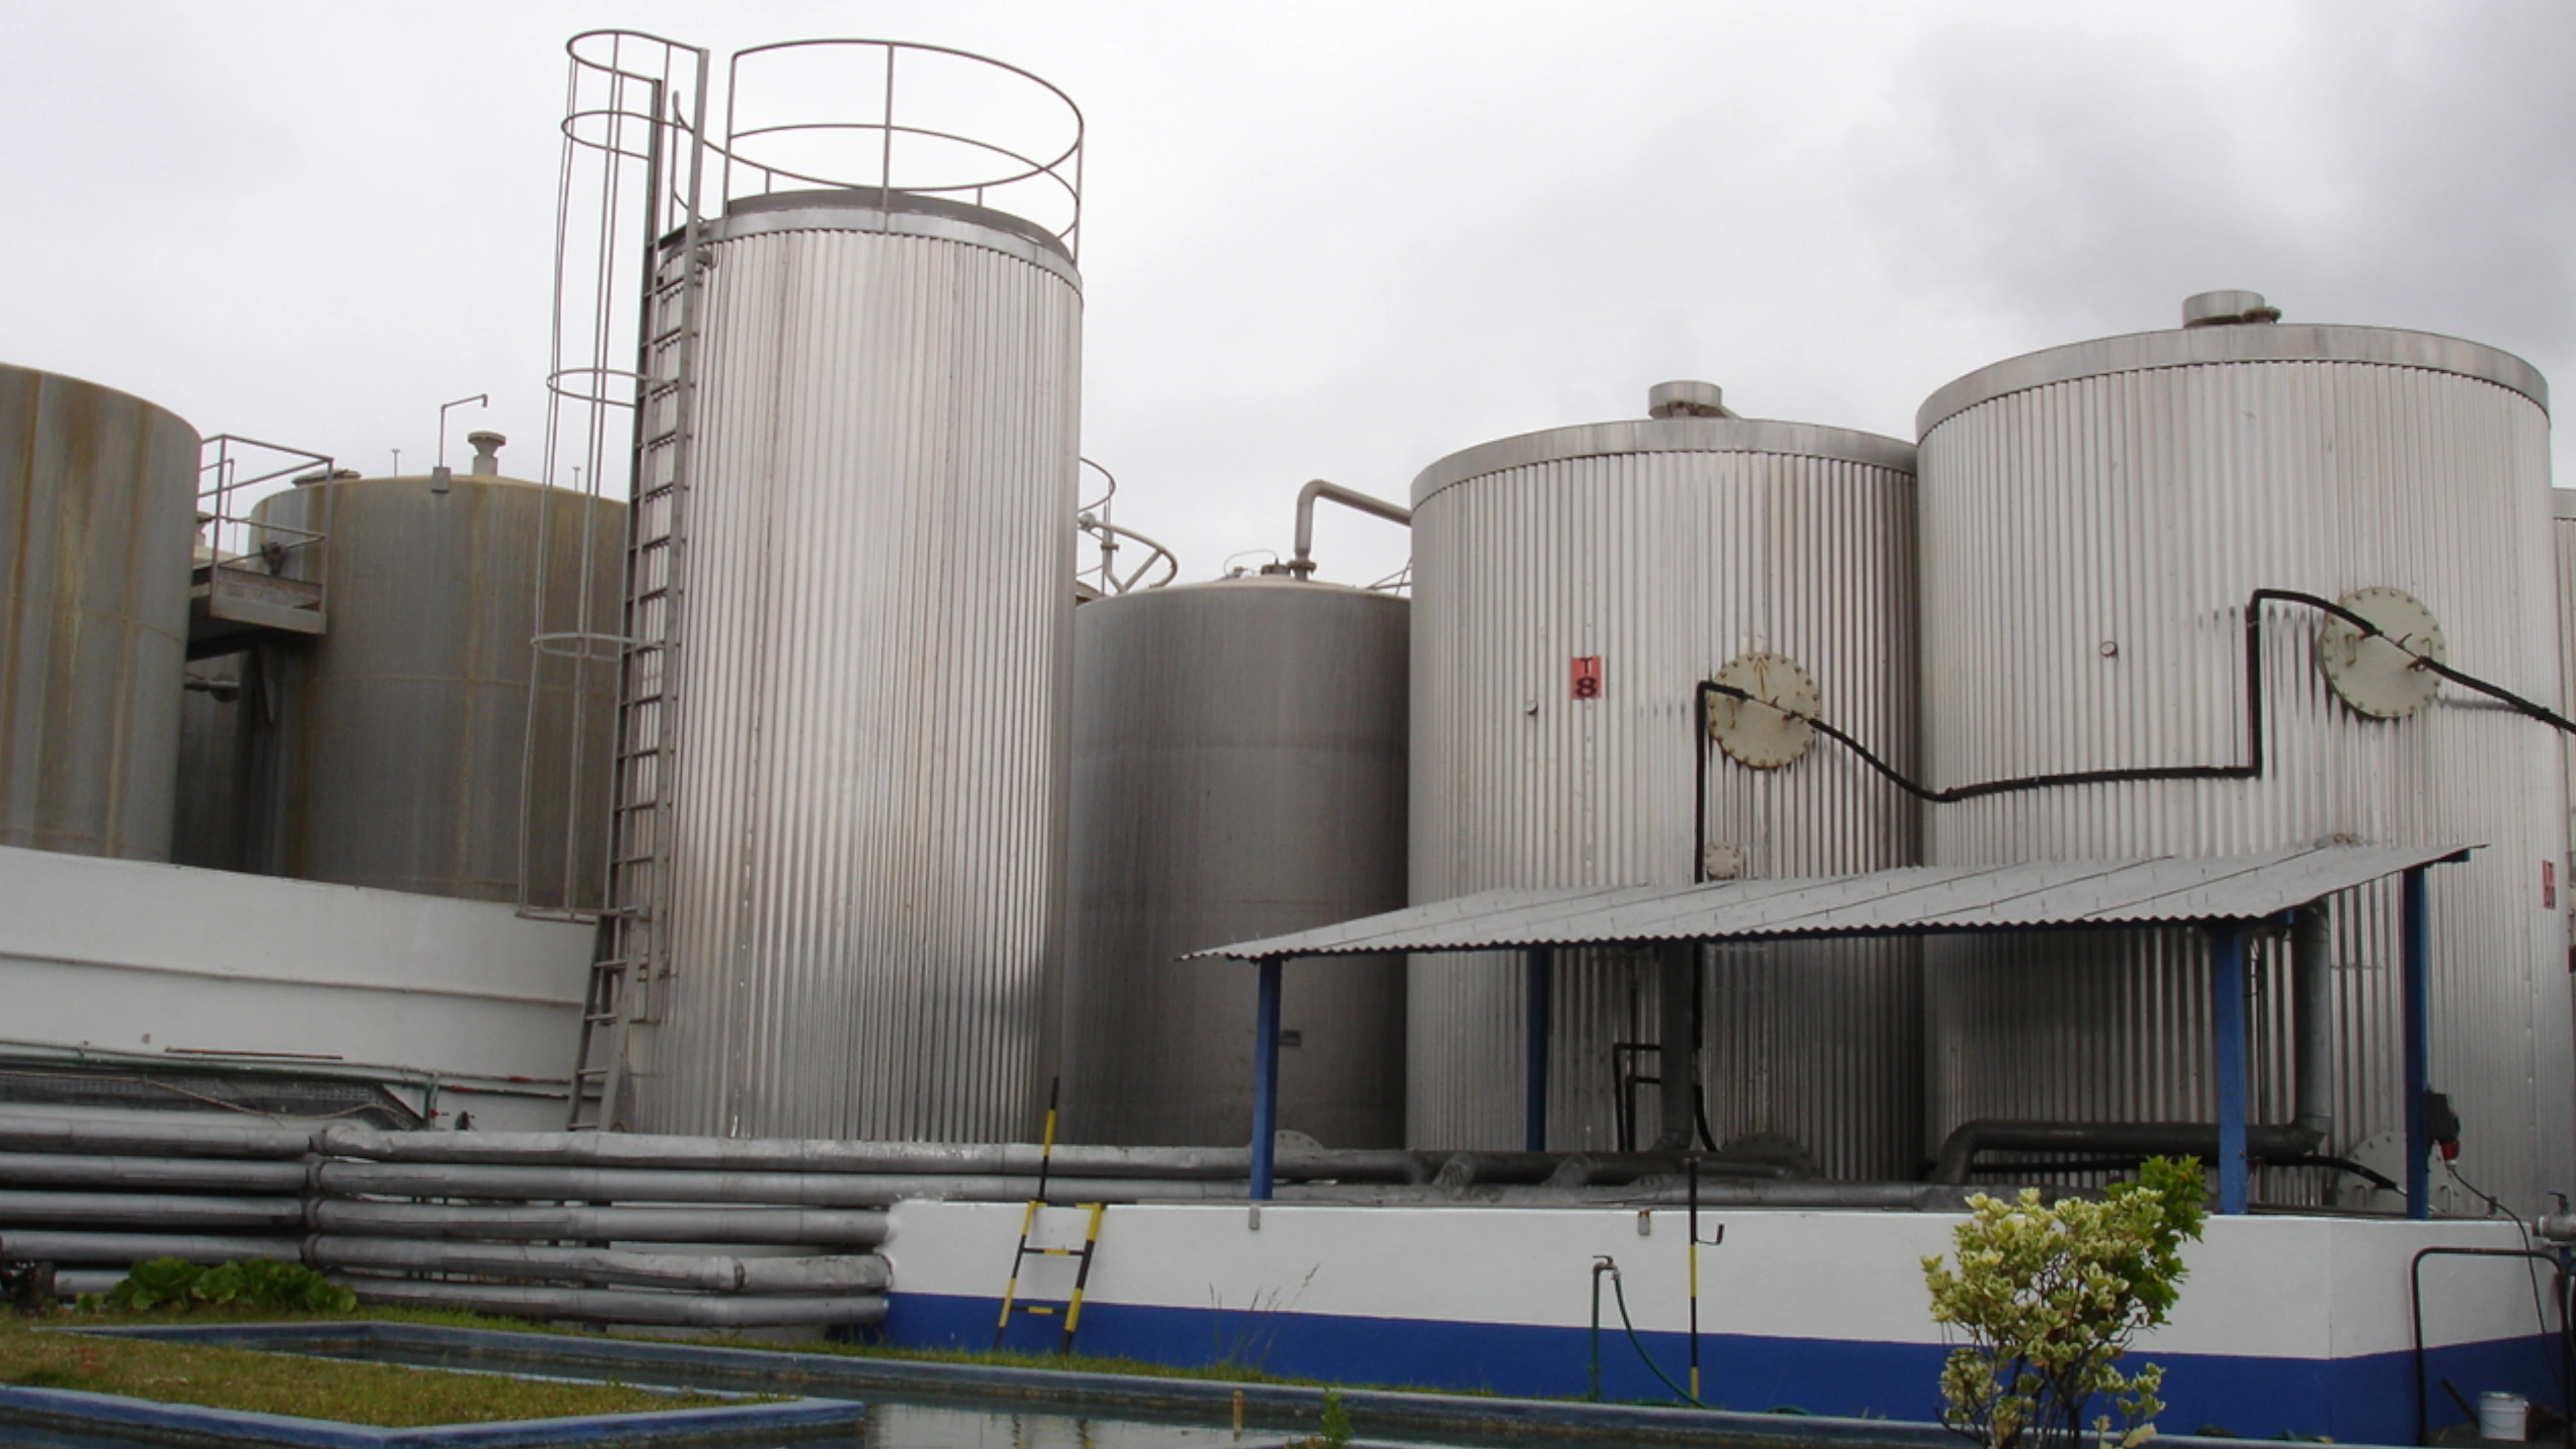 BTL Storage tanks in stainless steel - Chemical Industry - Paints